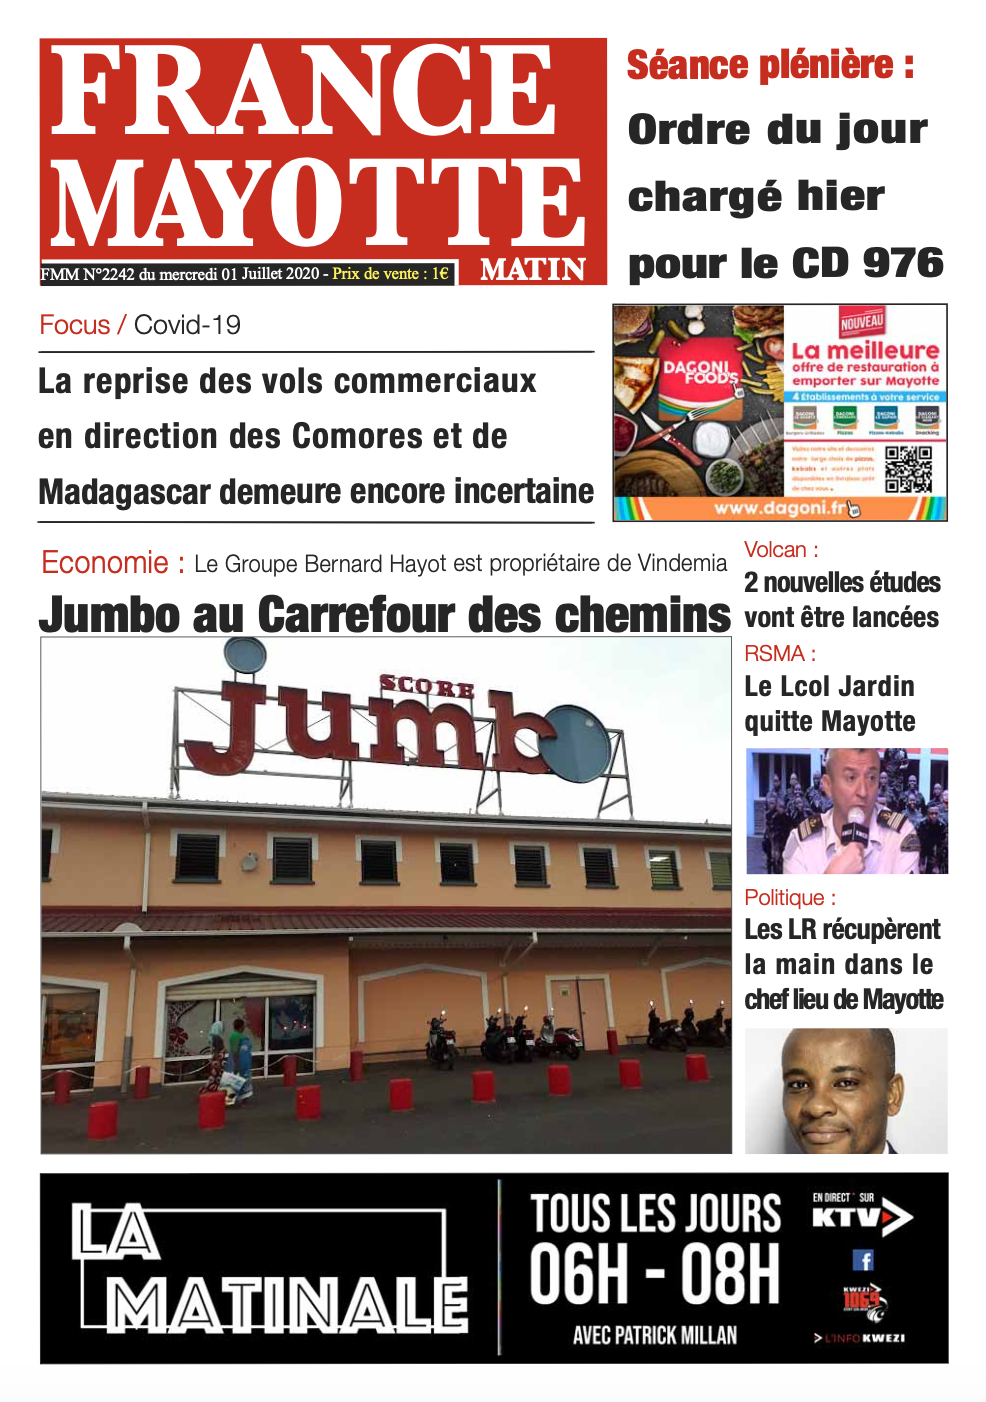 France Mayotte Mercredi 1er juillet 2020